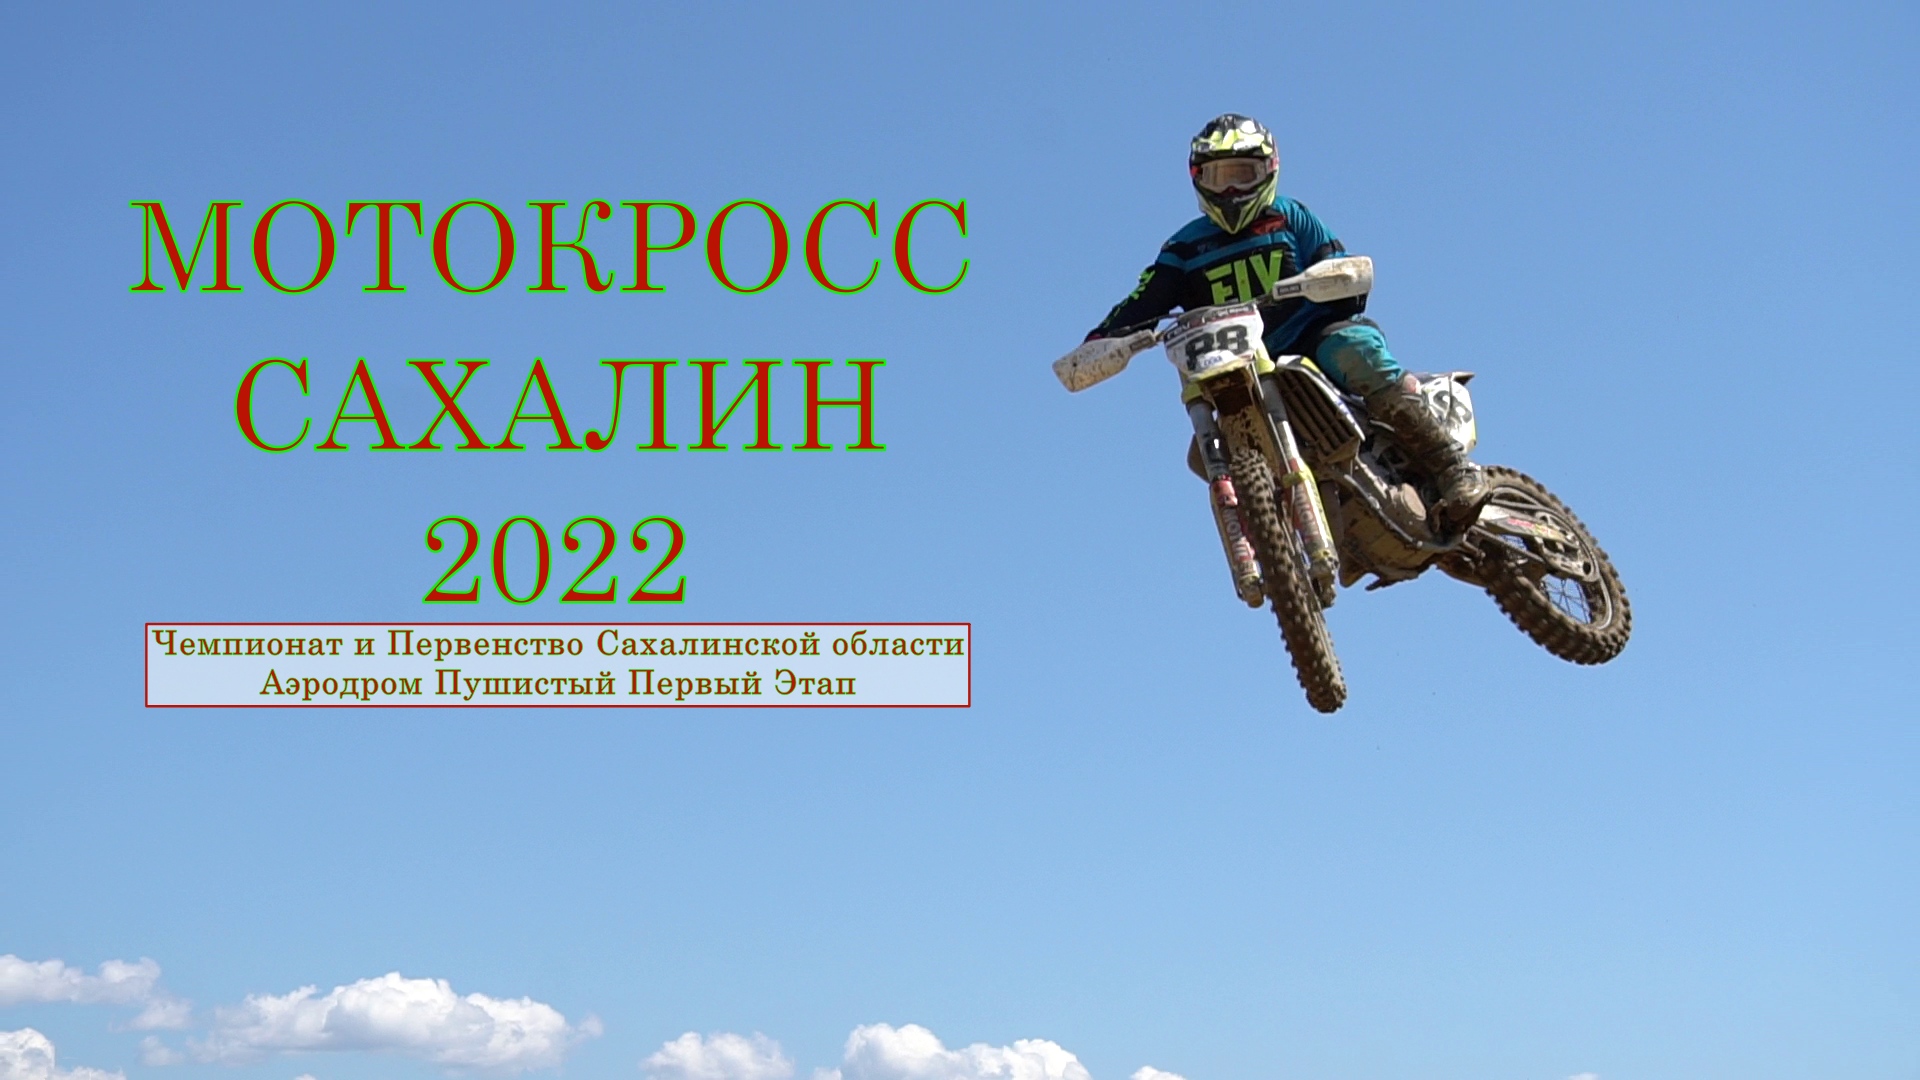 Мотокросс Сахалин 2022 Аэродром Пушистый Корсаков 15.05.2022 Первый Этап